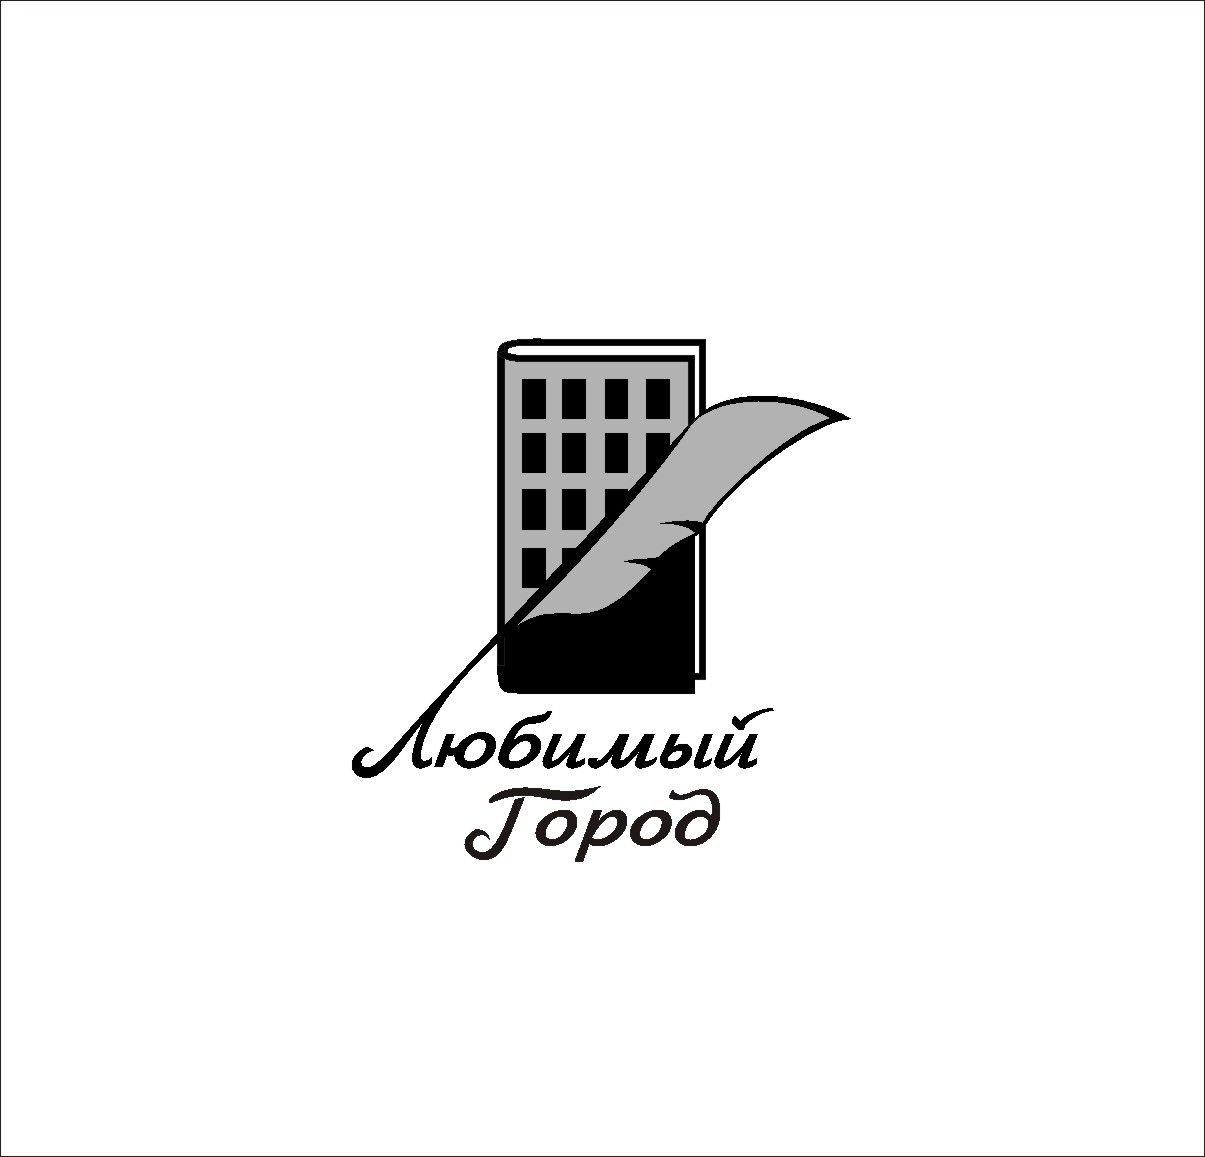 Лого для агентства недвиж и юридических услуг - дизайнер radchuk-ruslan